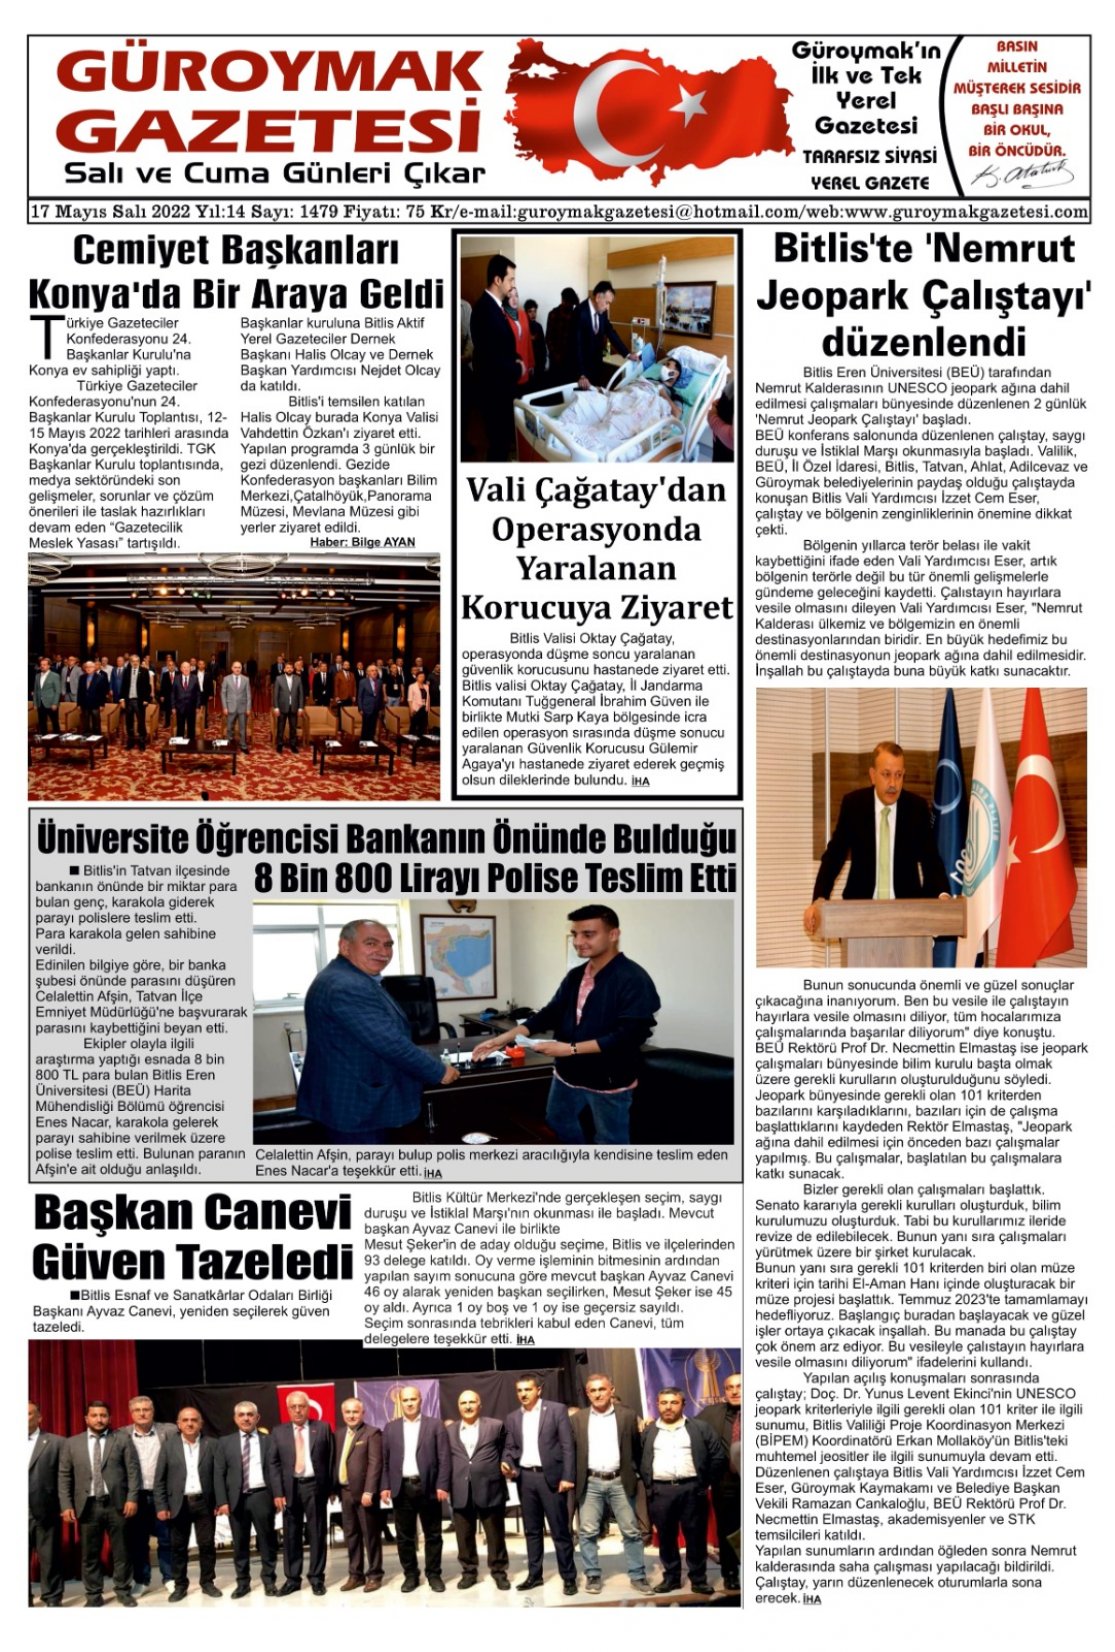 Güroymak Gazetesi WhatsApp Image 2022-05-16 at 23.54.14.jpeg Sayılı Gazete Küpürü